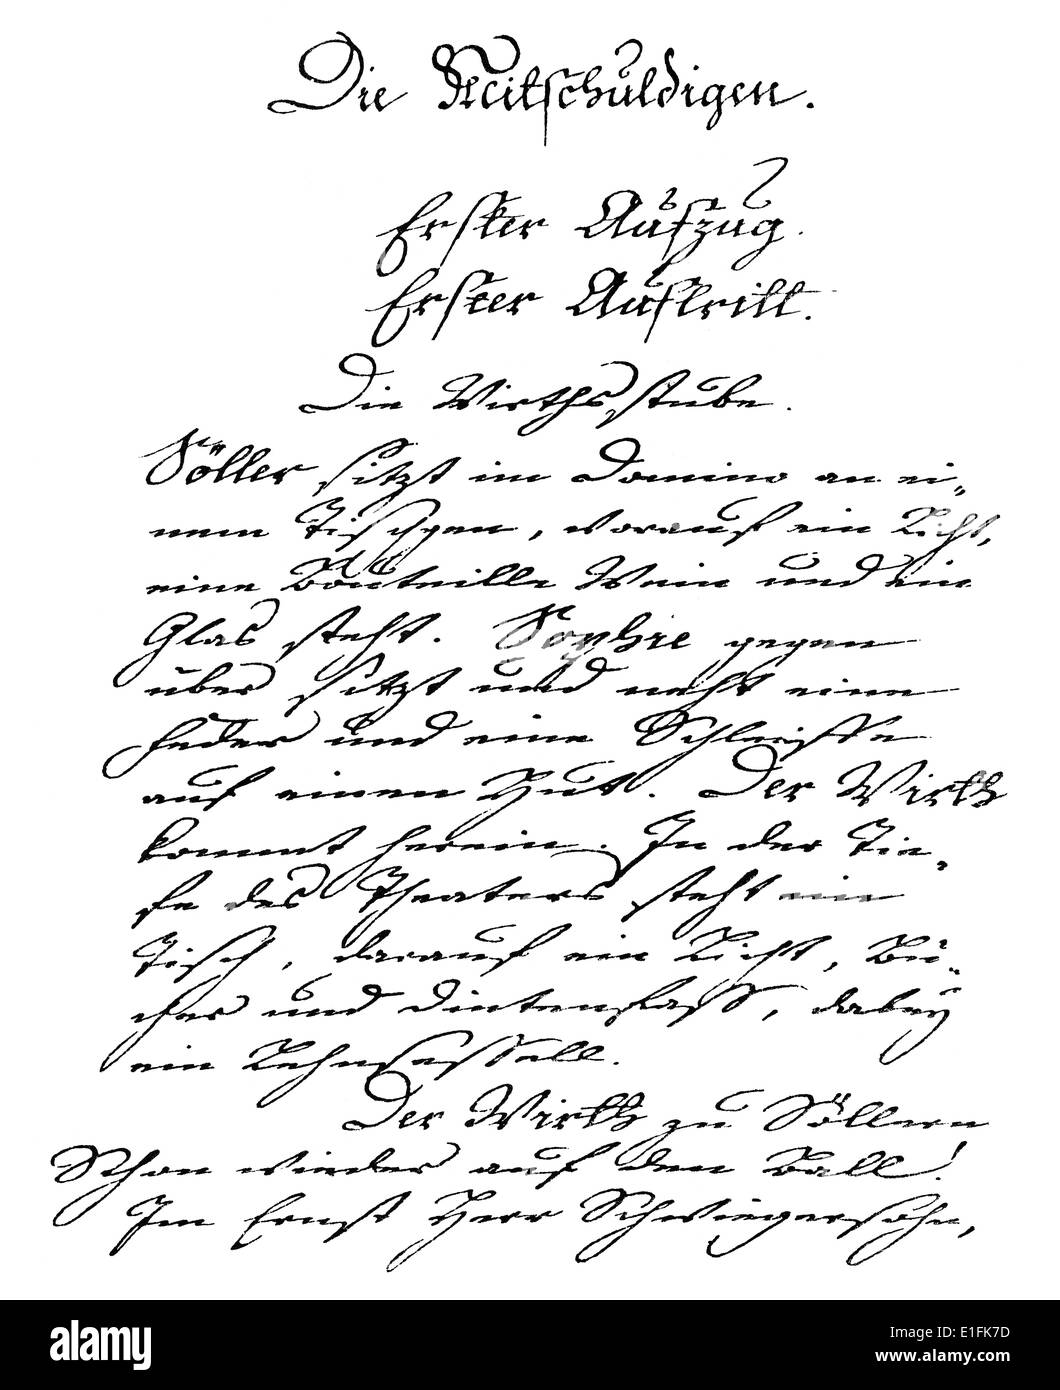 Die Mitschuldigen, Handwritten by Johann Wolfgang von Goethe, 1749 - 1832, a German poet Stock Photo